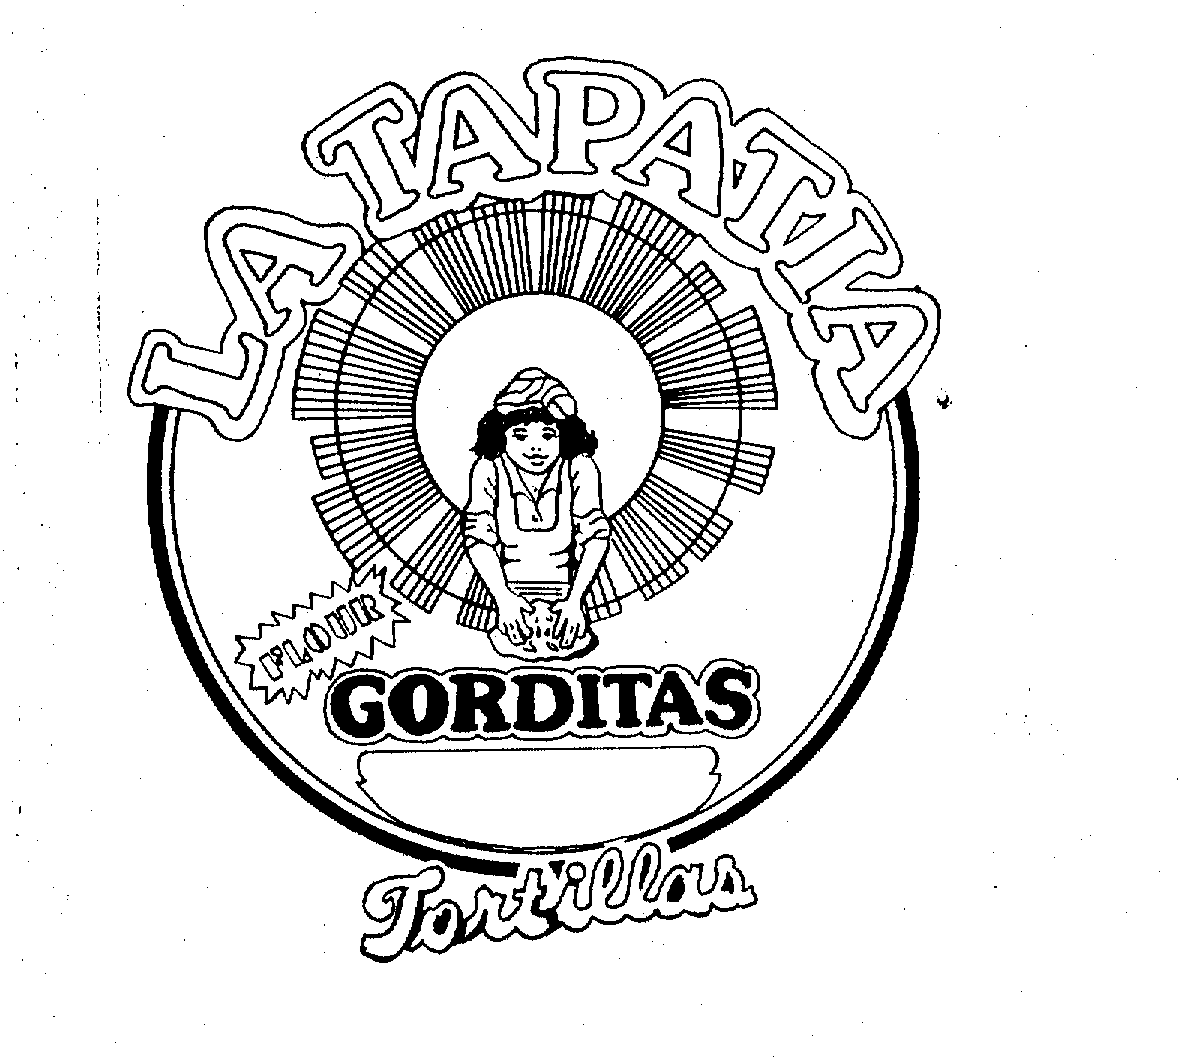 Trademark Logo LA TAPATIA TORTILLAS GORDITAS FLOUR